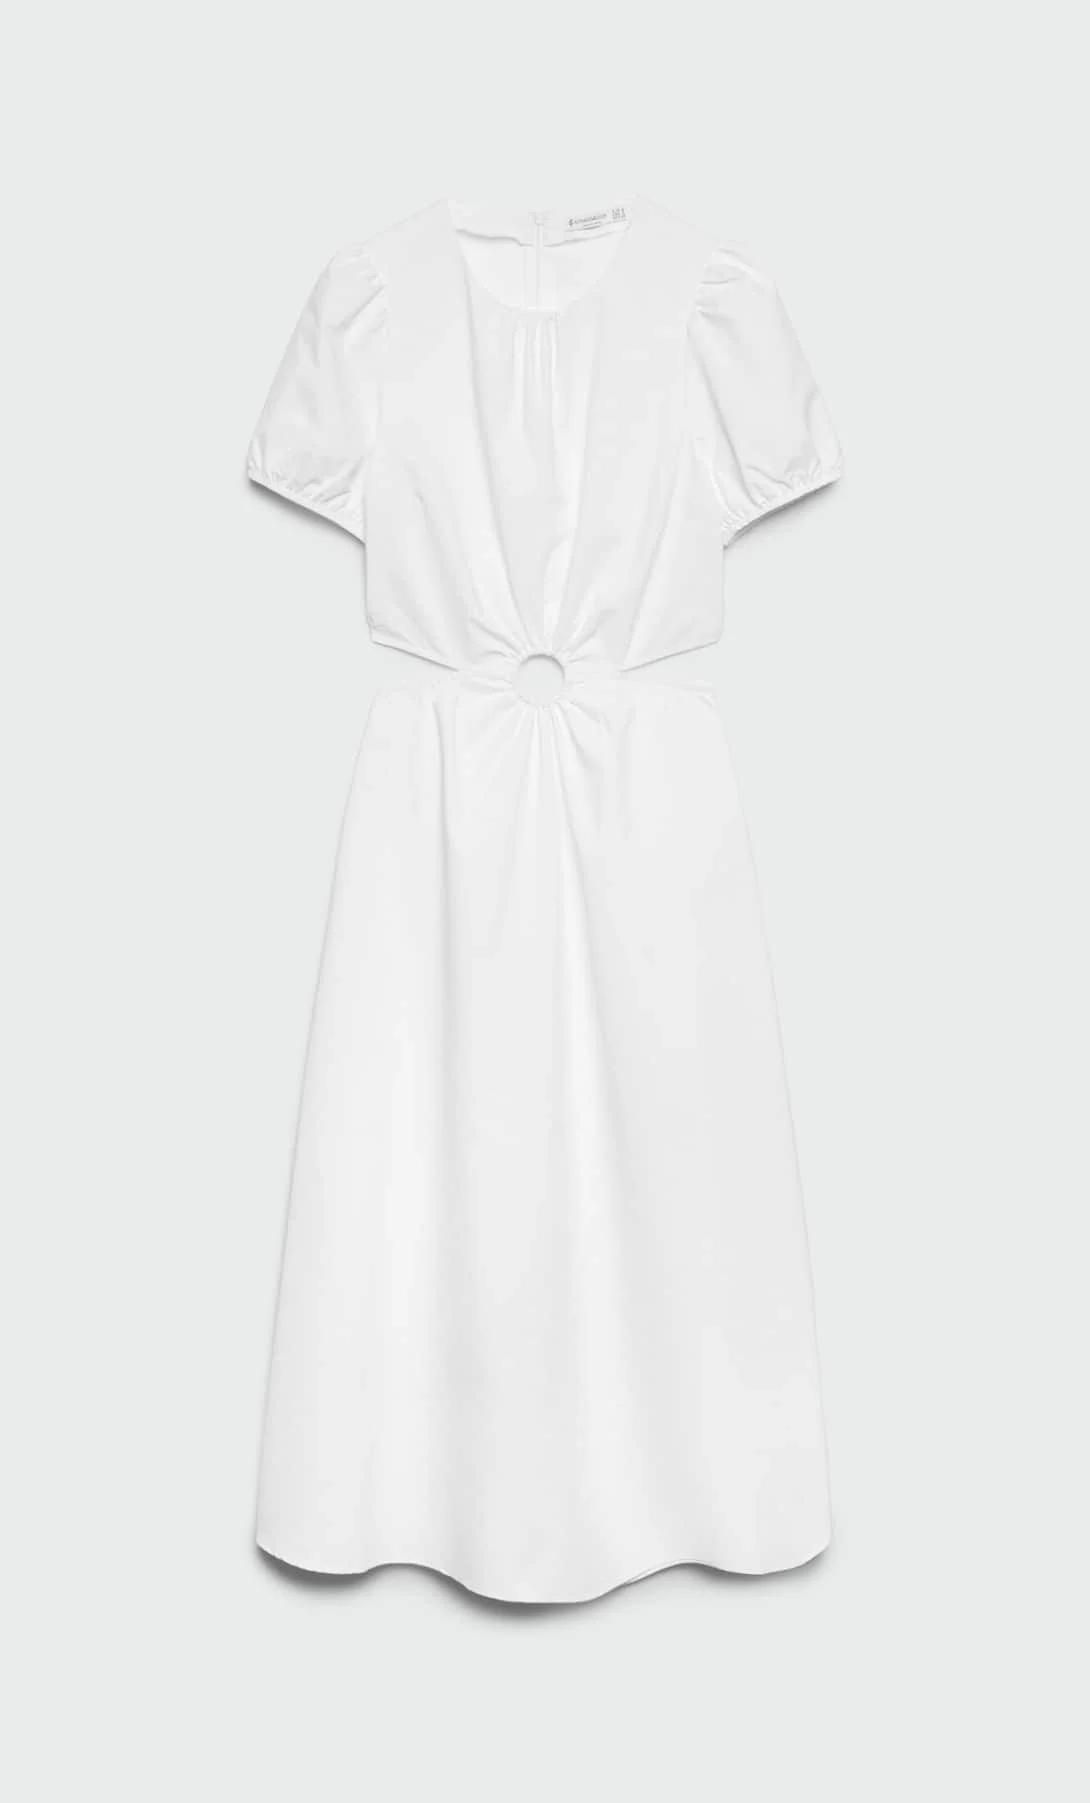 Veinte vestidos blancos de rebajas que son ideales para el verano